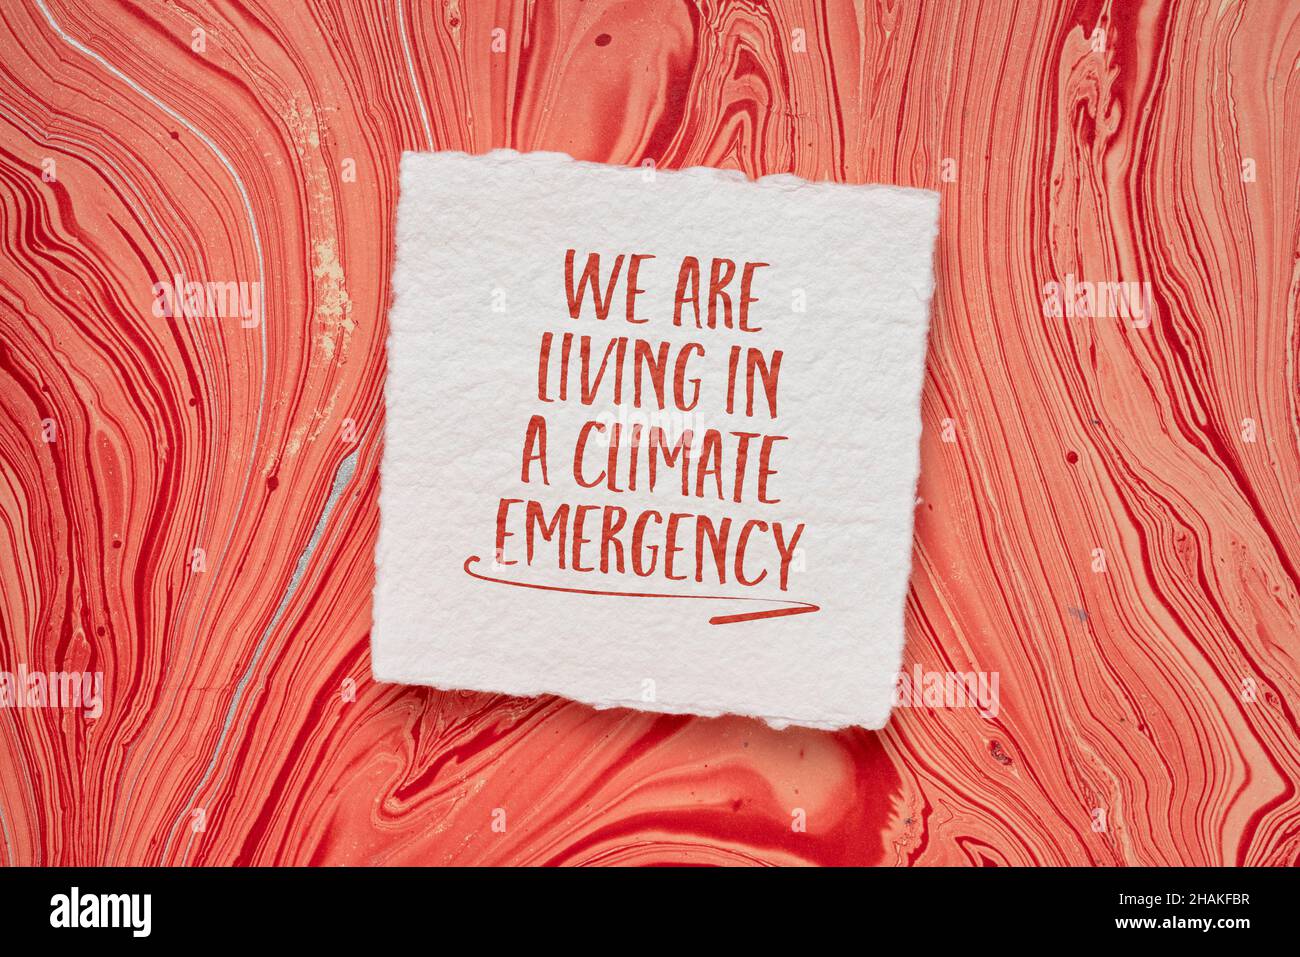 viviamo in clima emergenza parola astratto, scrittura a mano su una carta fatta a mano contro la carta marmorizzata rossa, concetto di riscaldamento globale Foto Stock